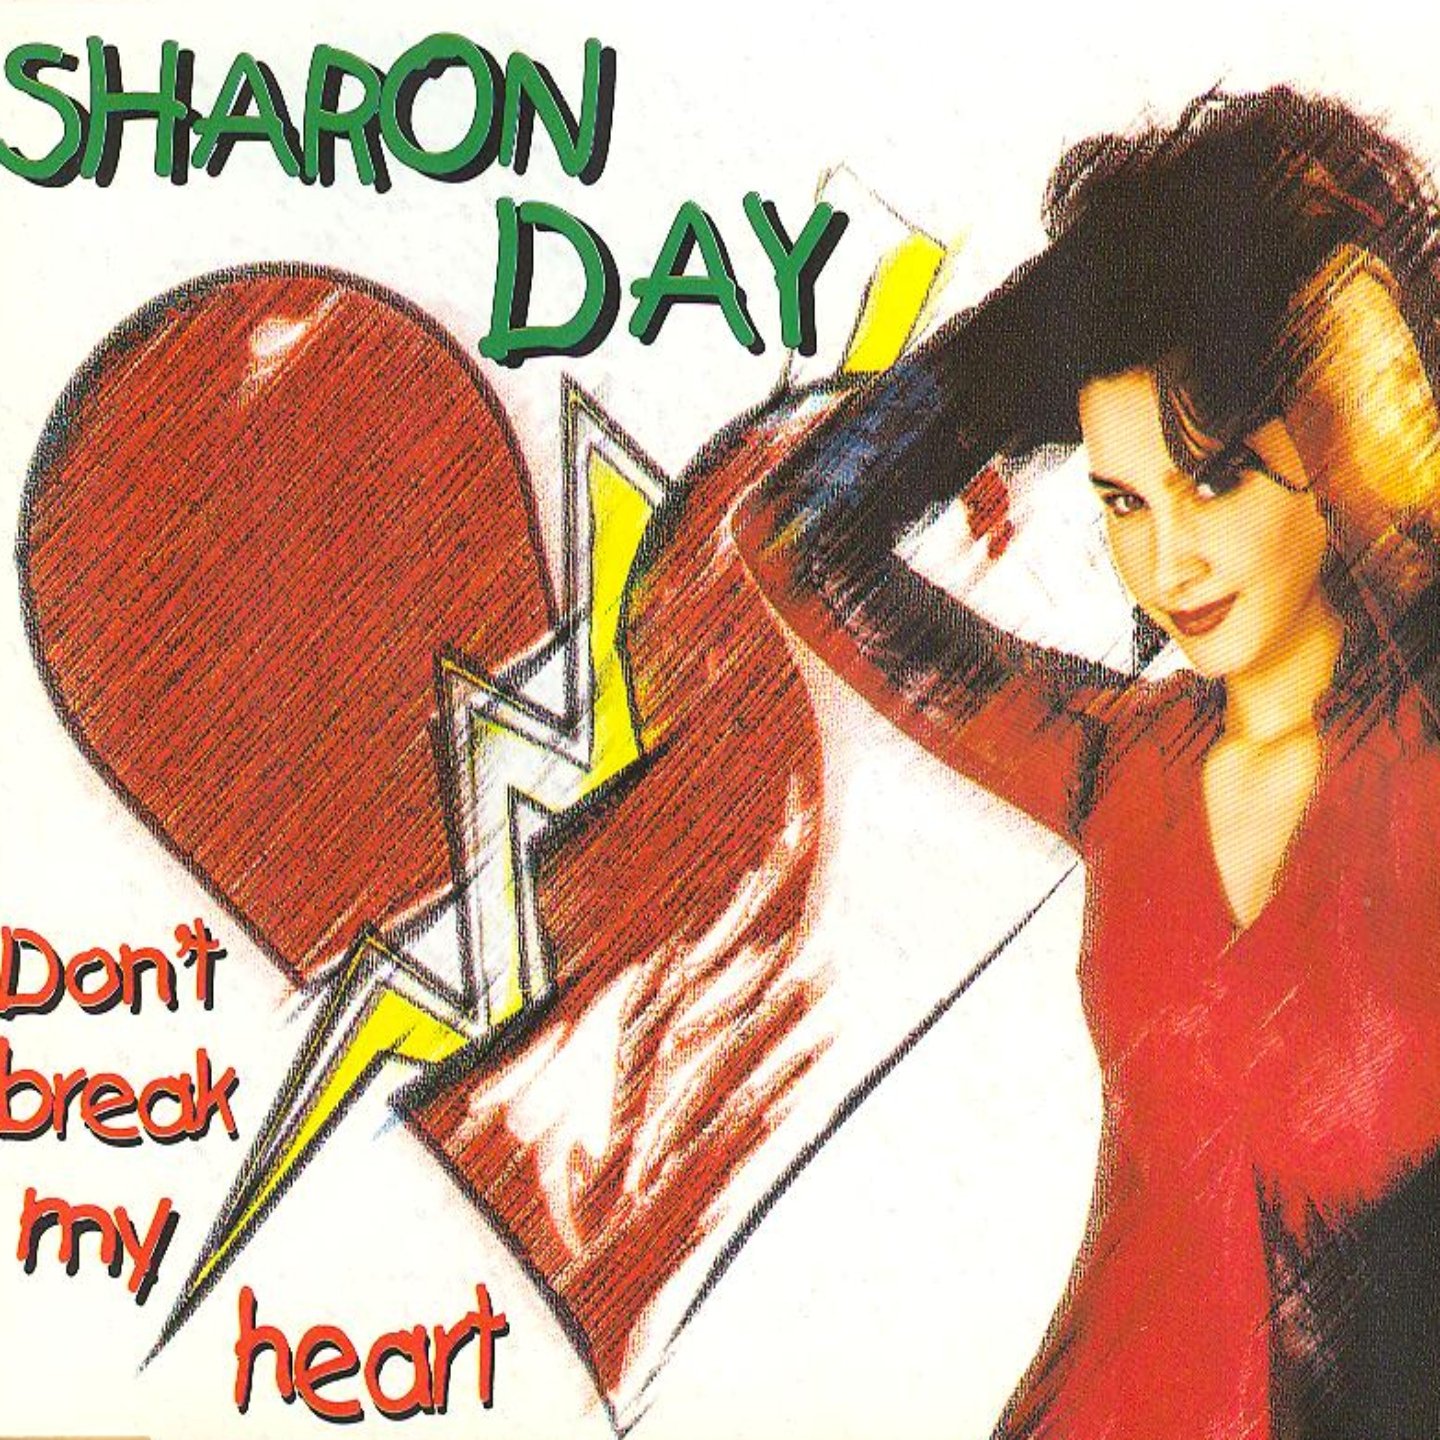 Break my heart if you can фф. Don't Break my Heart. Sharon Day. Please don't Break my Heart альбом. DJ Space'c don't Break my Heart.